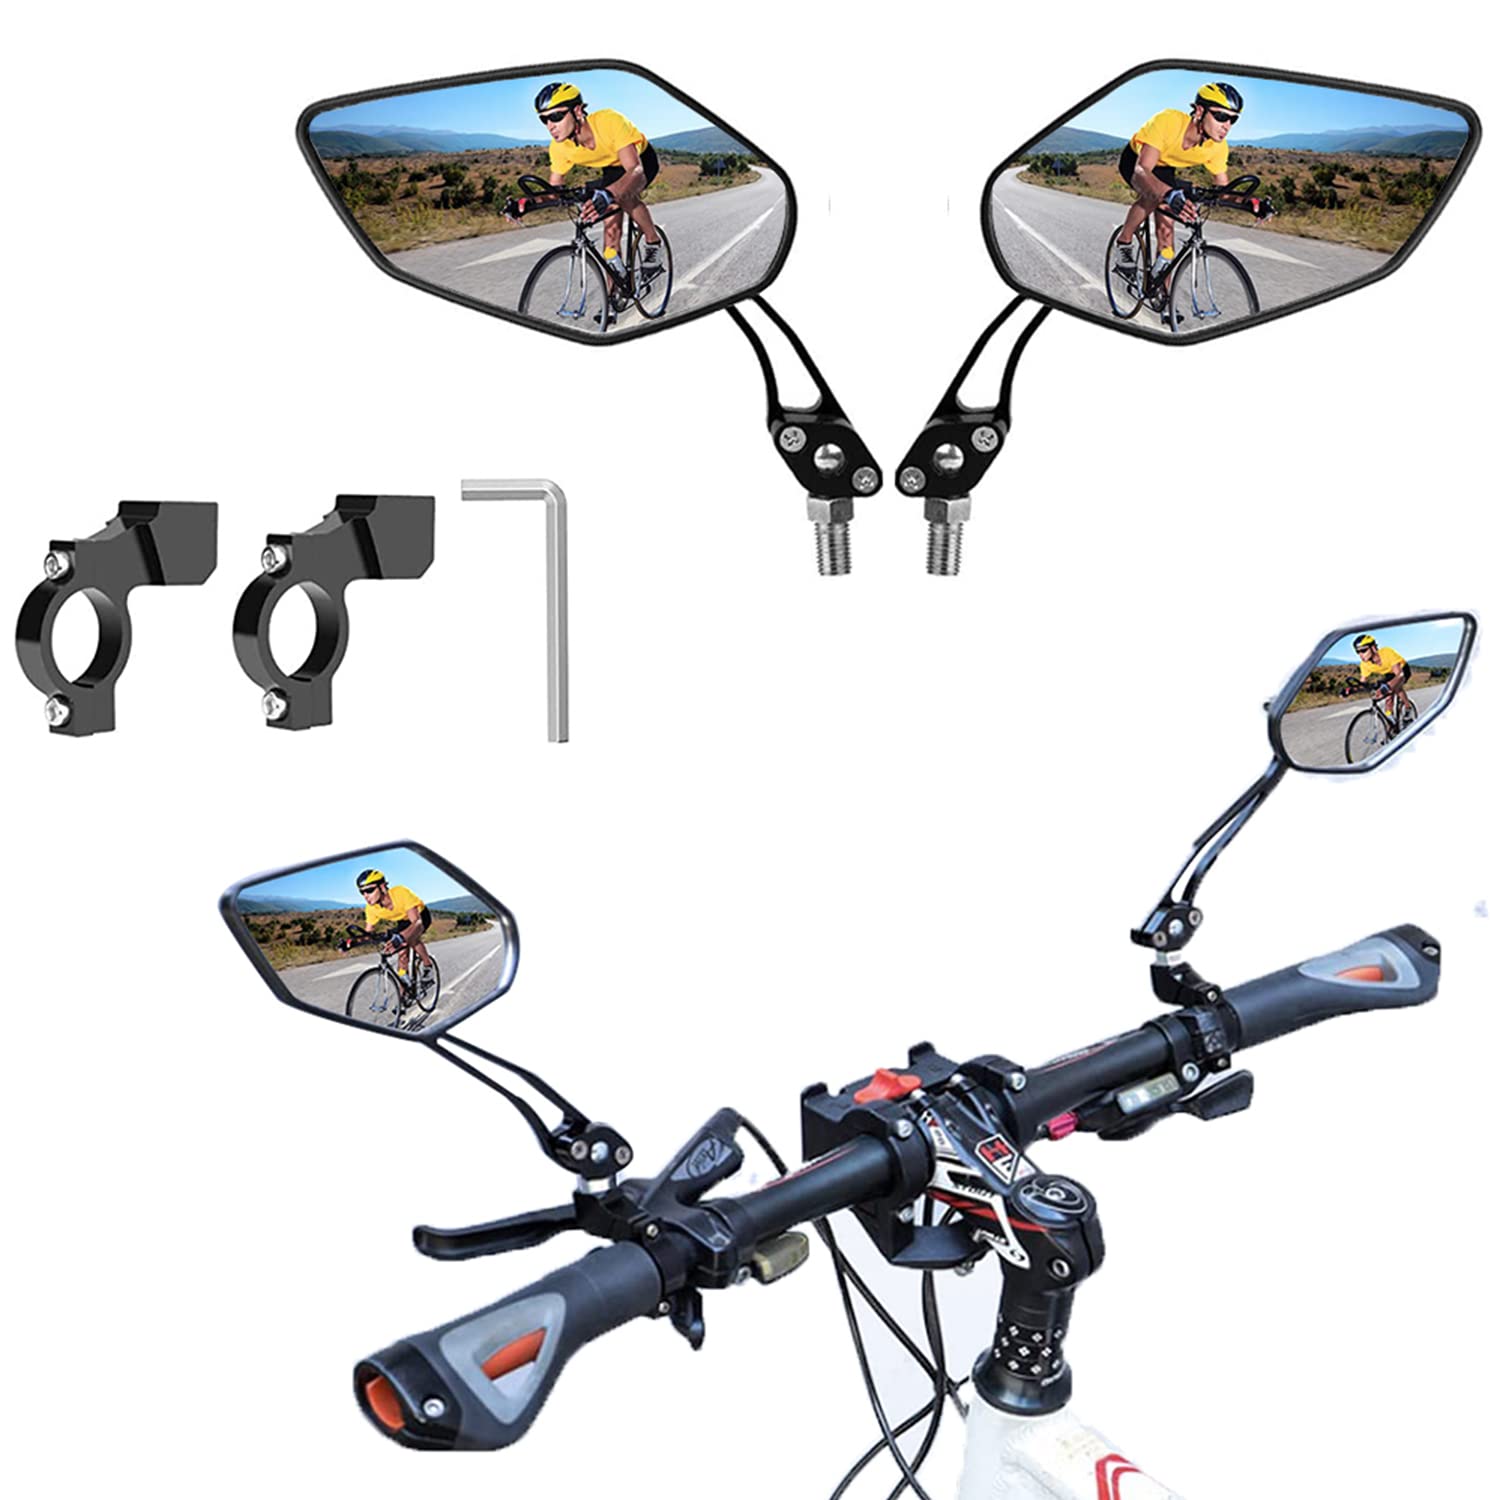 2 Stück Fahrradspiegel,360°Verstellbarer Fahrrad Rückspiegel, HD Fahrrad Spiegel Klappbar Fahrradrückspiegel für Lenker,Weitwinkel Fahrrad Spiegel Fahrradrückspielgel für Fahrrad von ZUOMIDIE